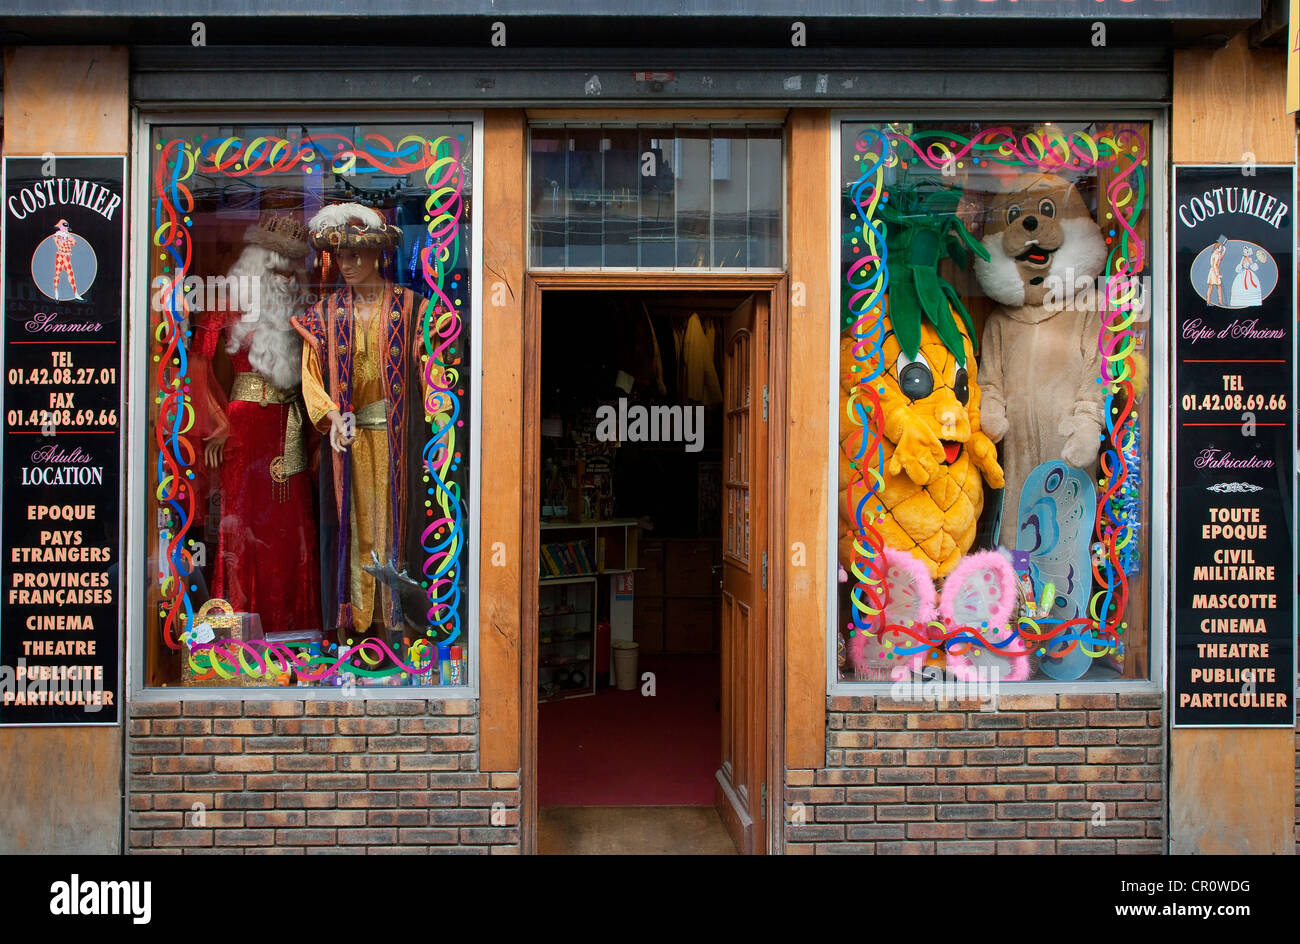 France, Paris, boutique Sommier, costumes hire Stock Photo - Alamy